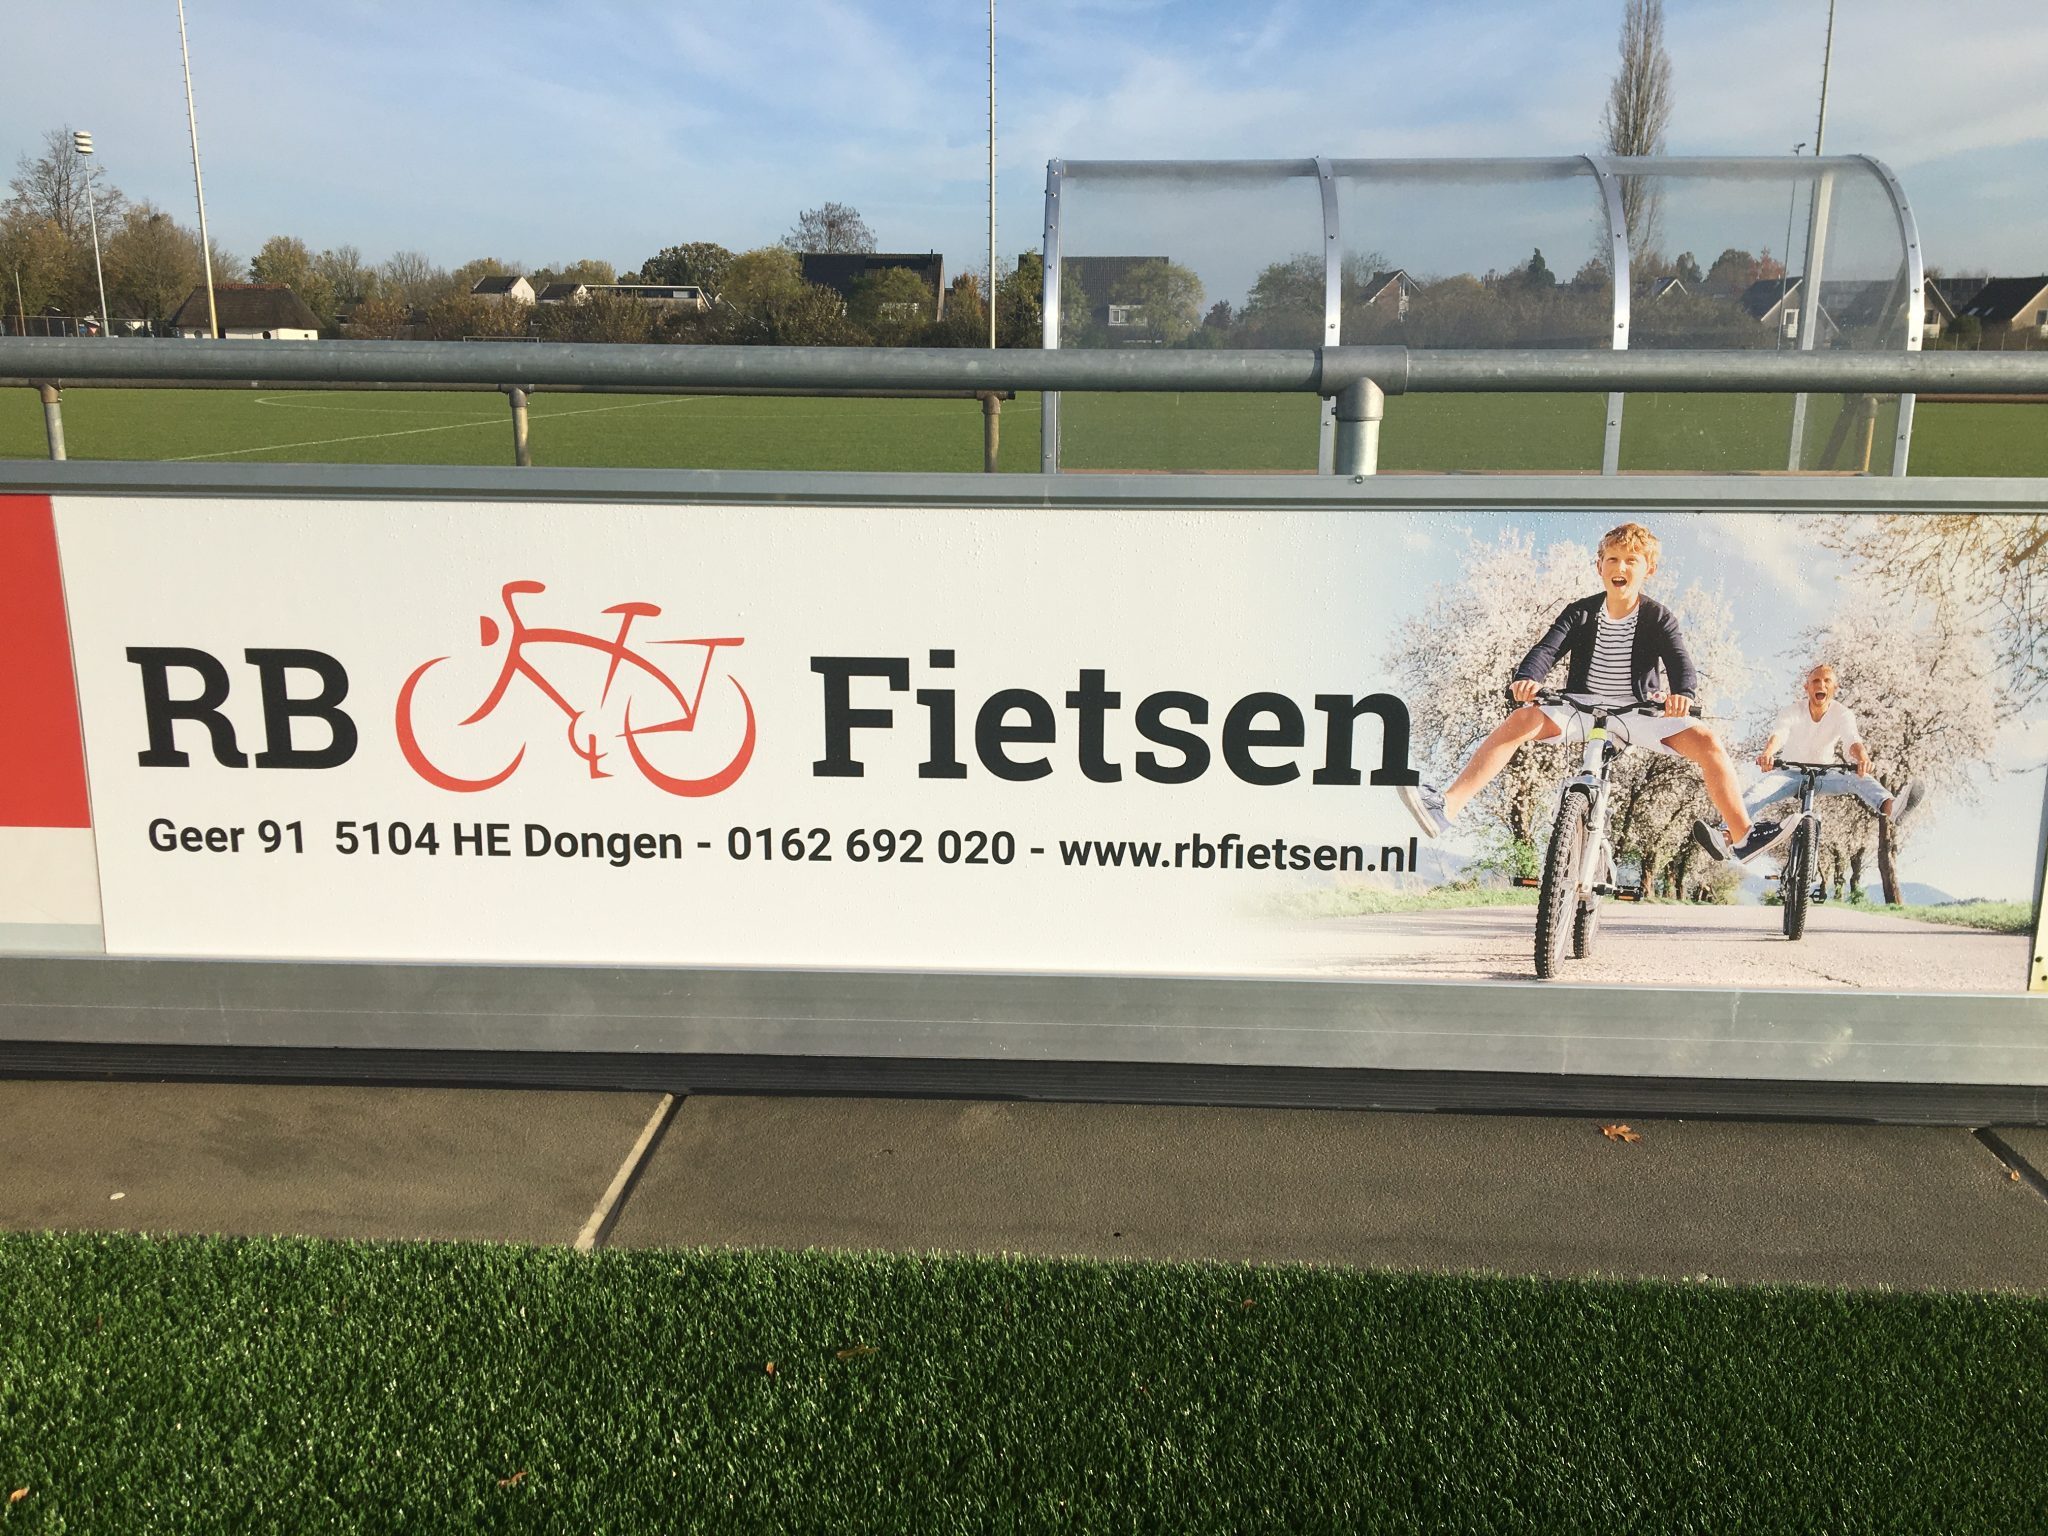 RB Fietsen nieuwe bordsponsor VV Dongen